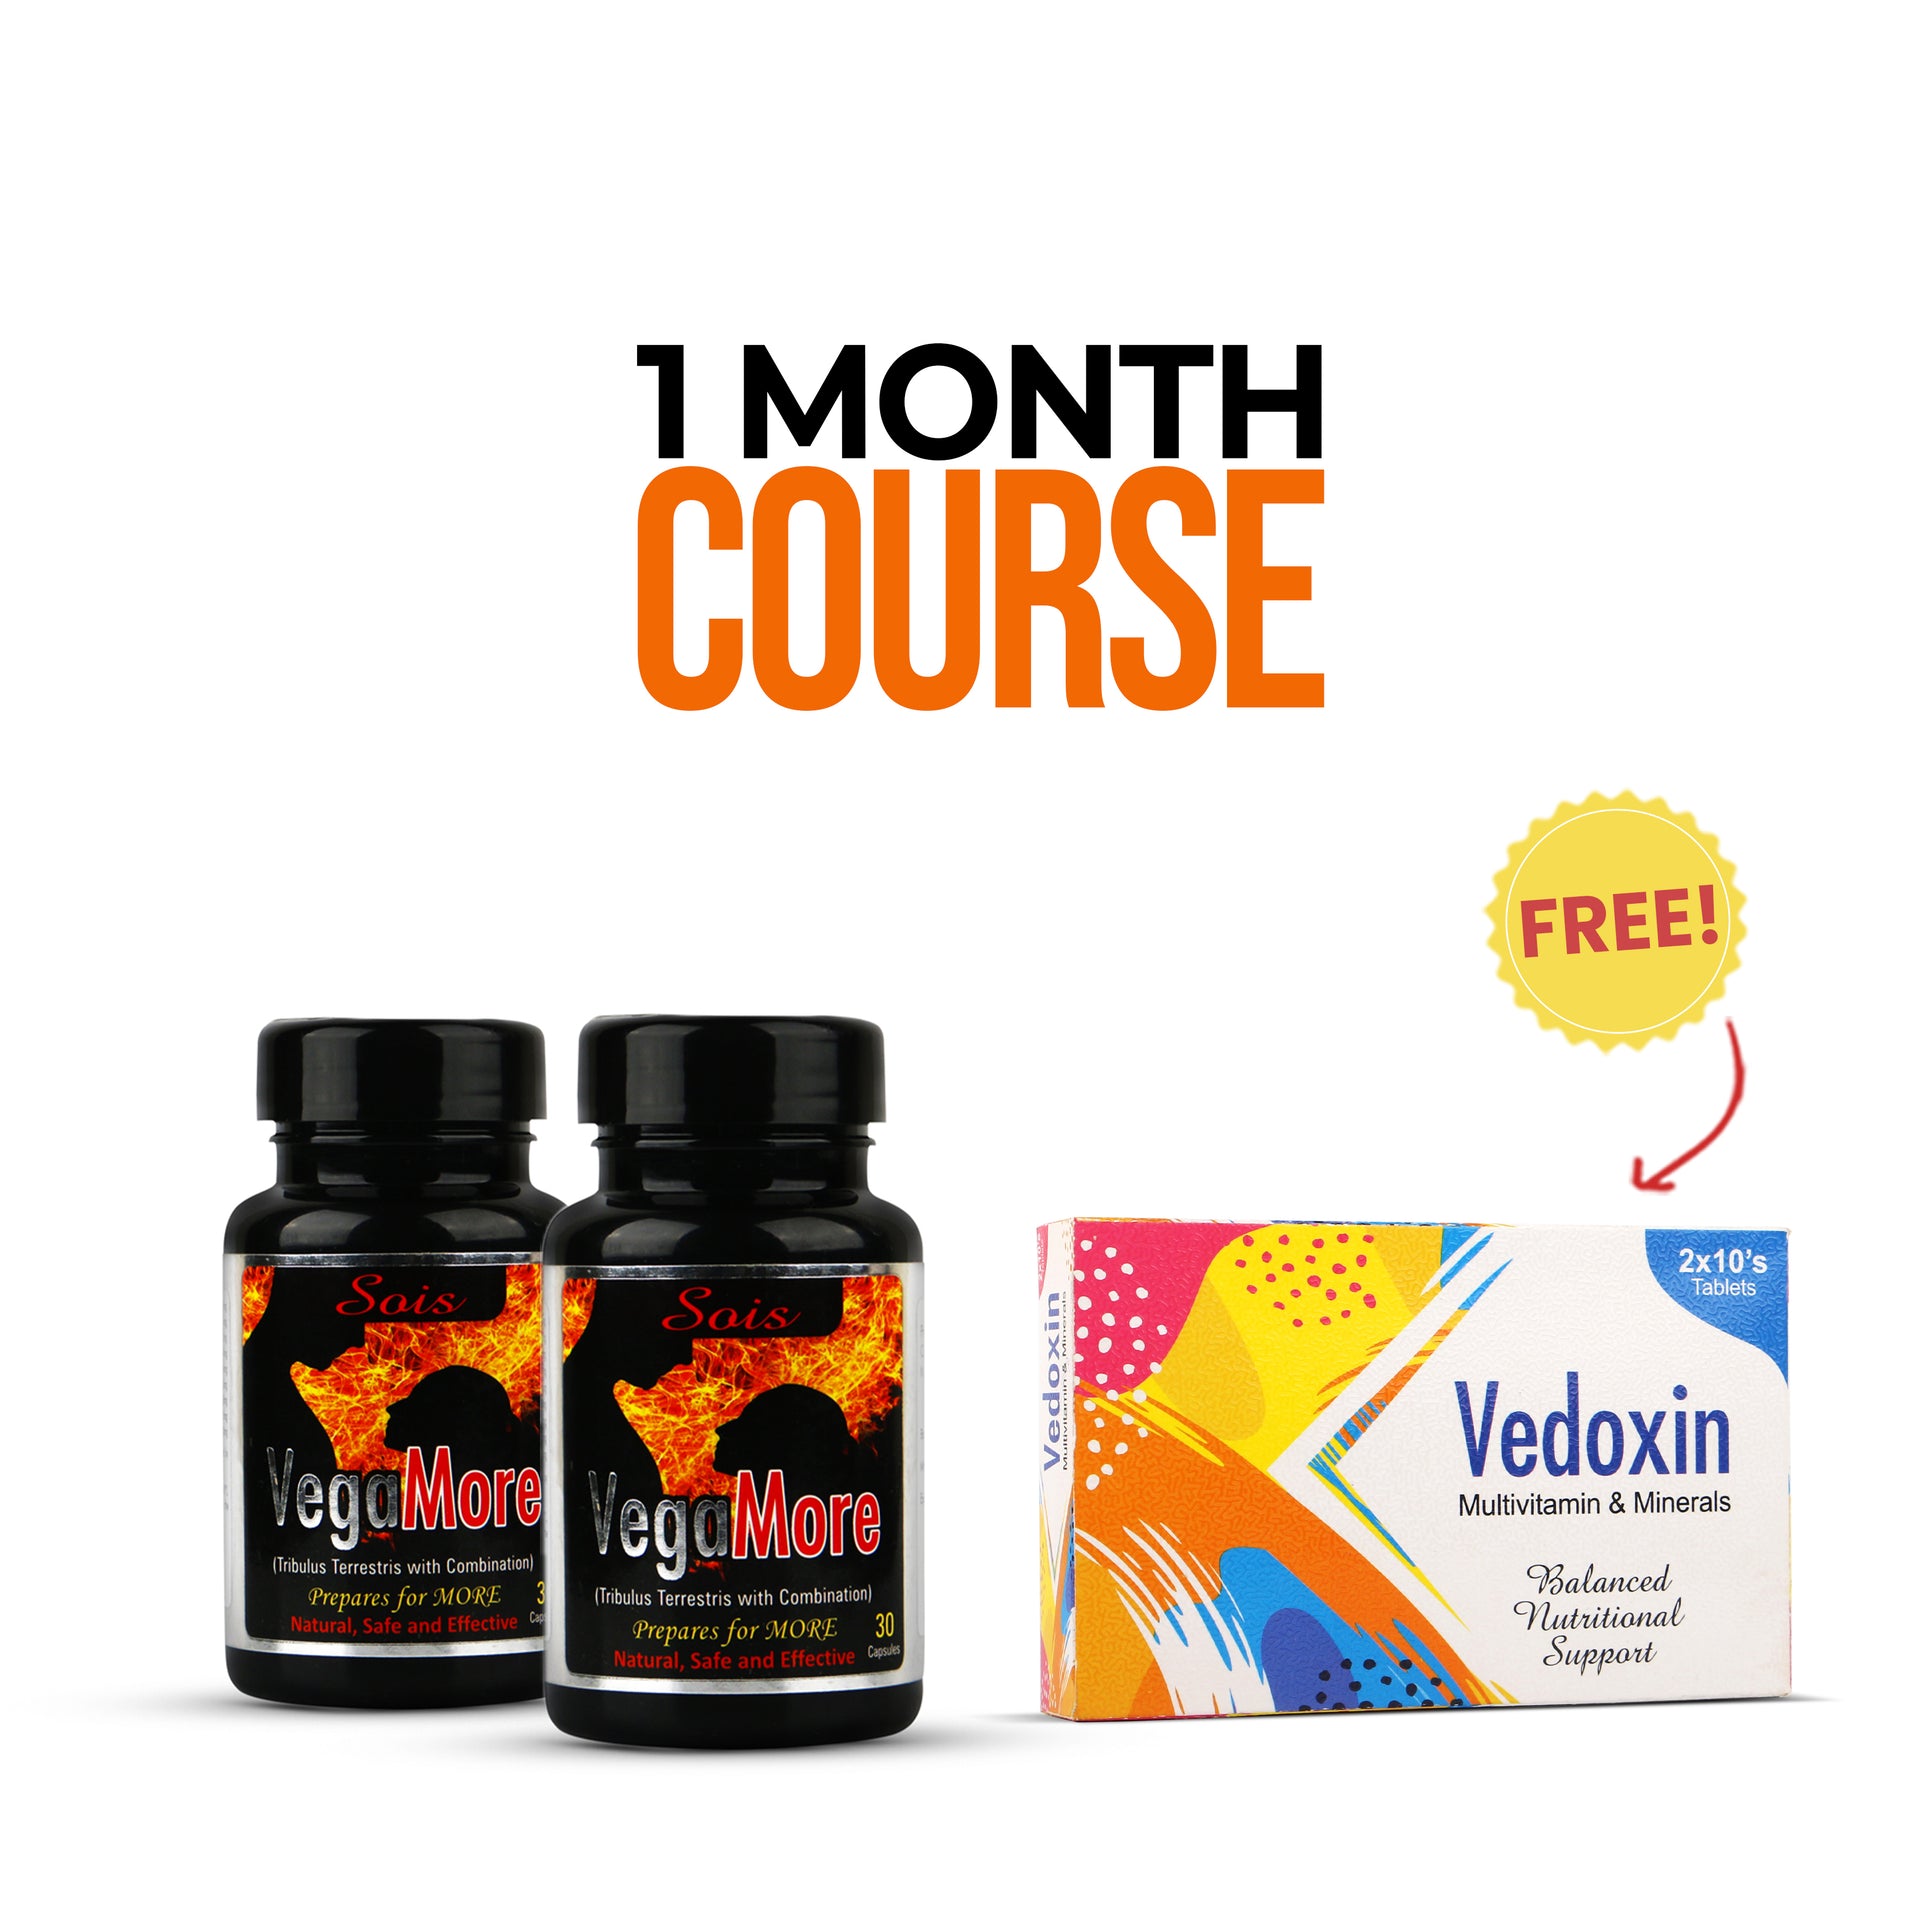 Buy 2 Vegamore Jar & get 1 Vedoxin Tablet FREE